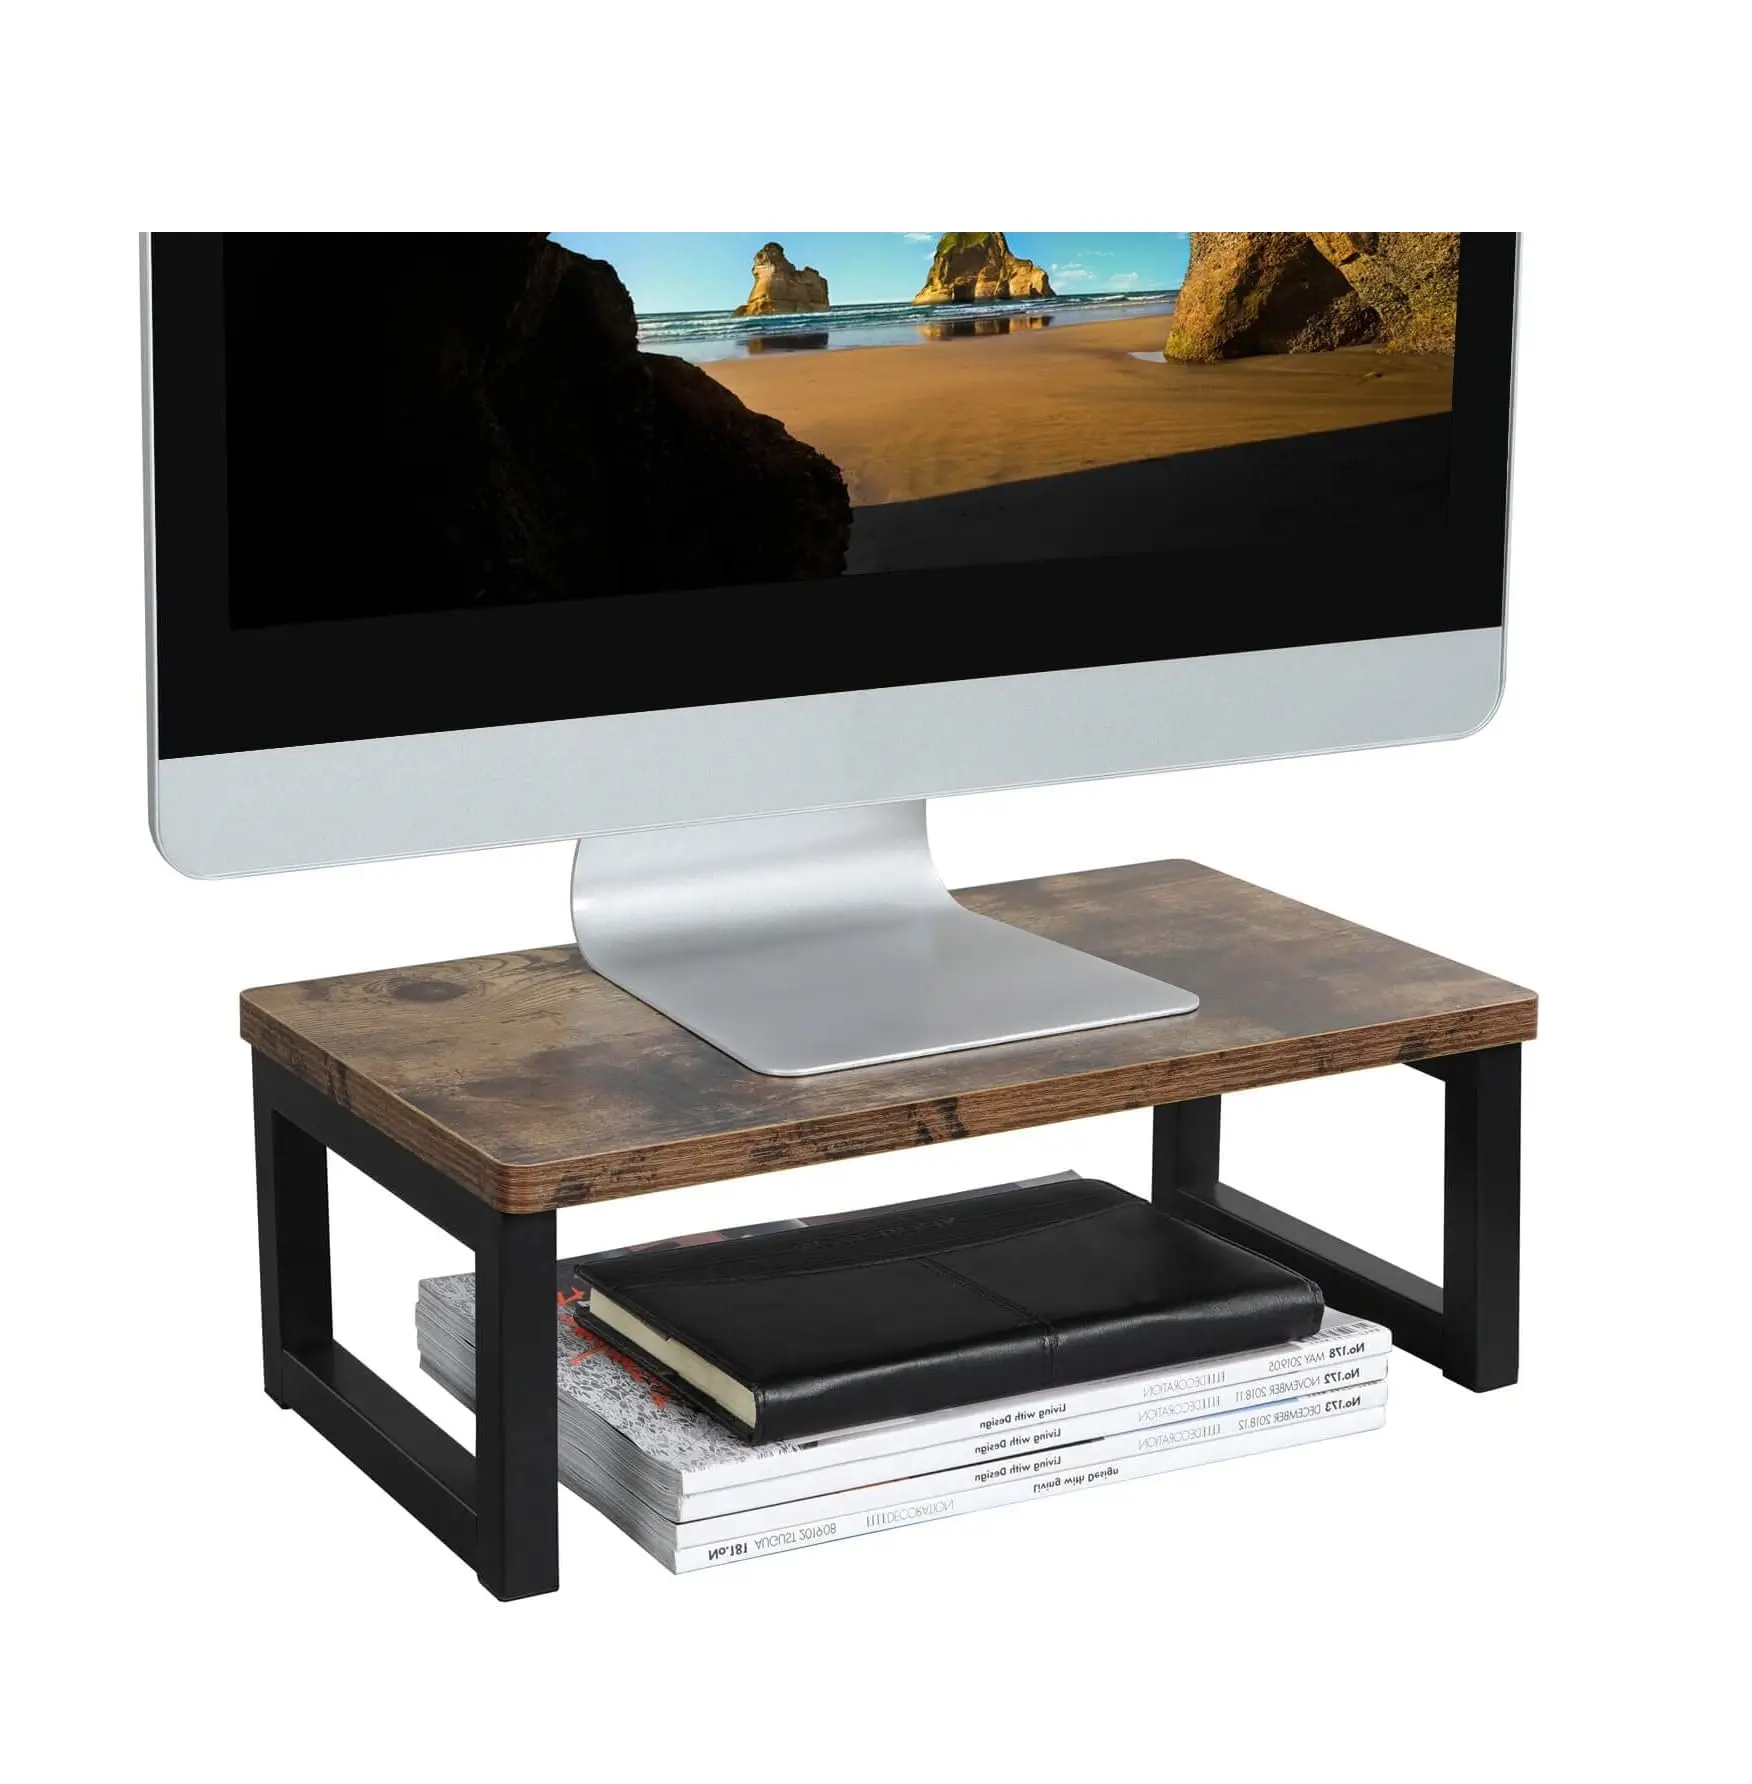 Supporto per Monitor in legno Vintage Riser scaffale per Organizer da tavolo multiuso per Computer portatile 15.7 L X 9 W X 5.5 H(Dark Bro